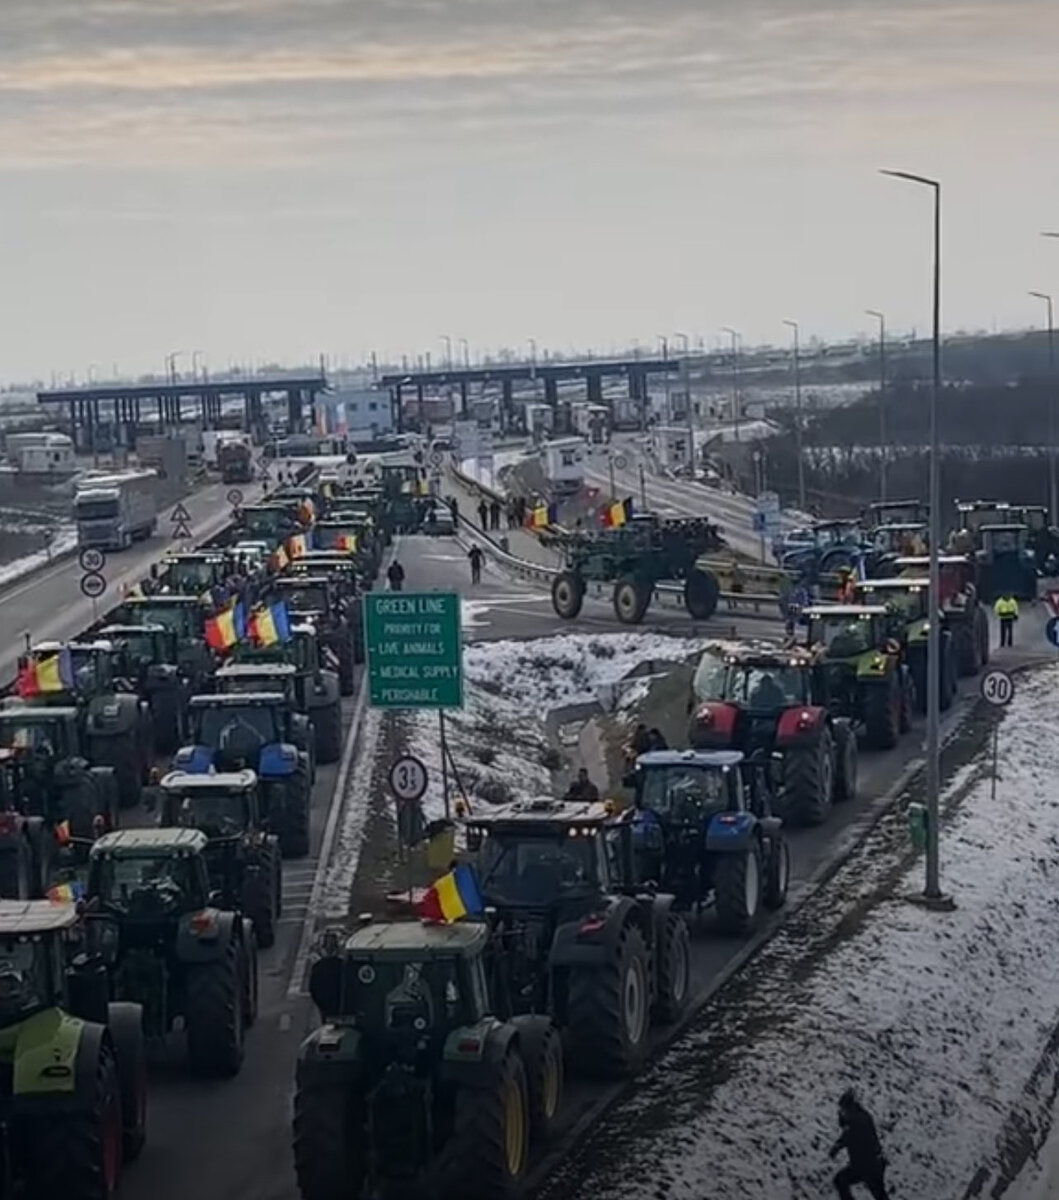  Румыния массово включается в протесты фермеров, поддерживая немецких сельскохозяйственных производителей и сектора транспортной логистики.